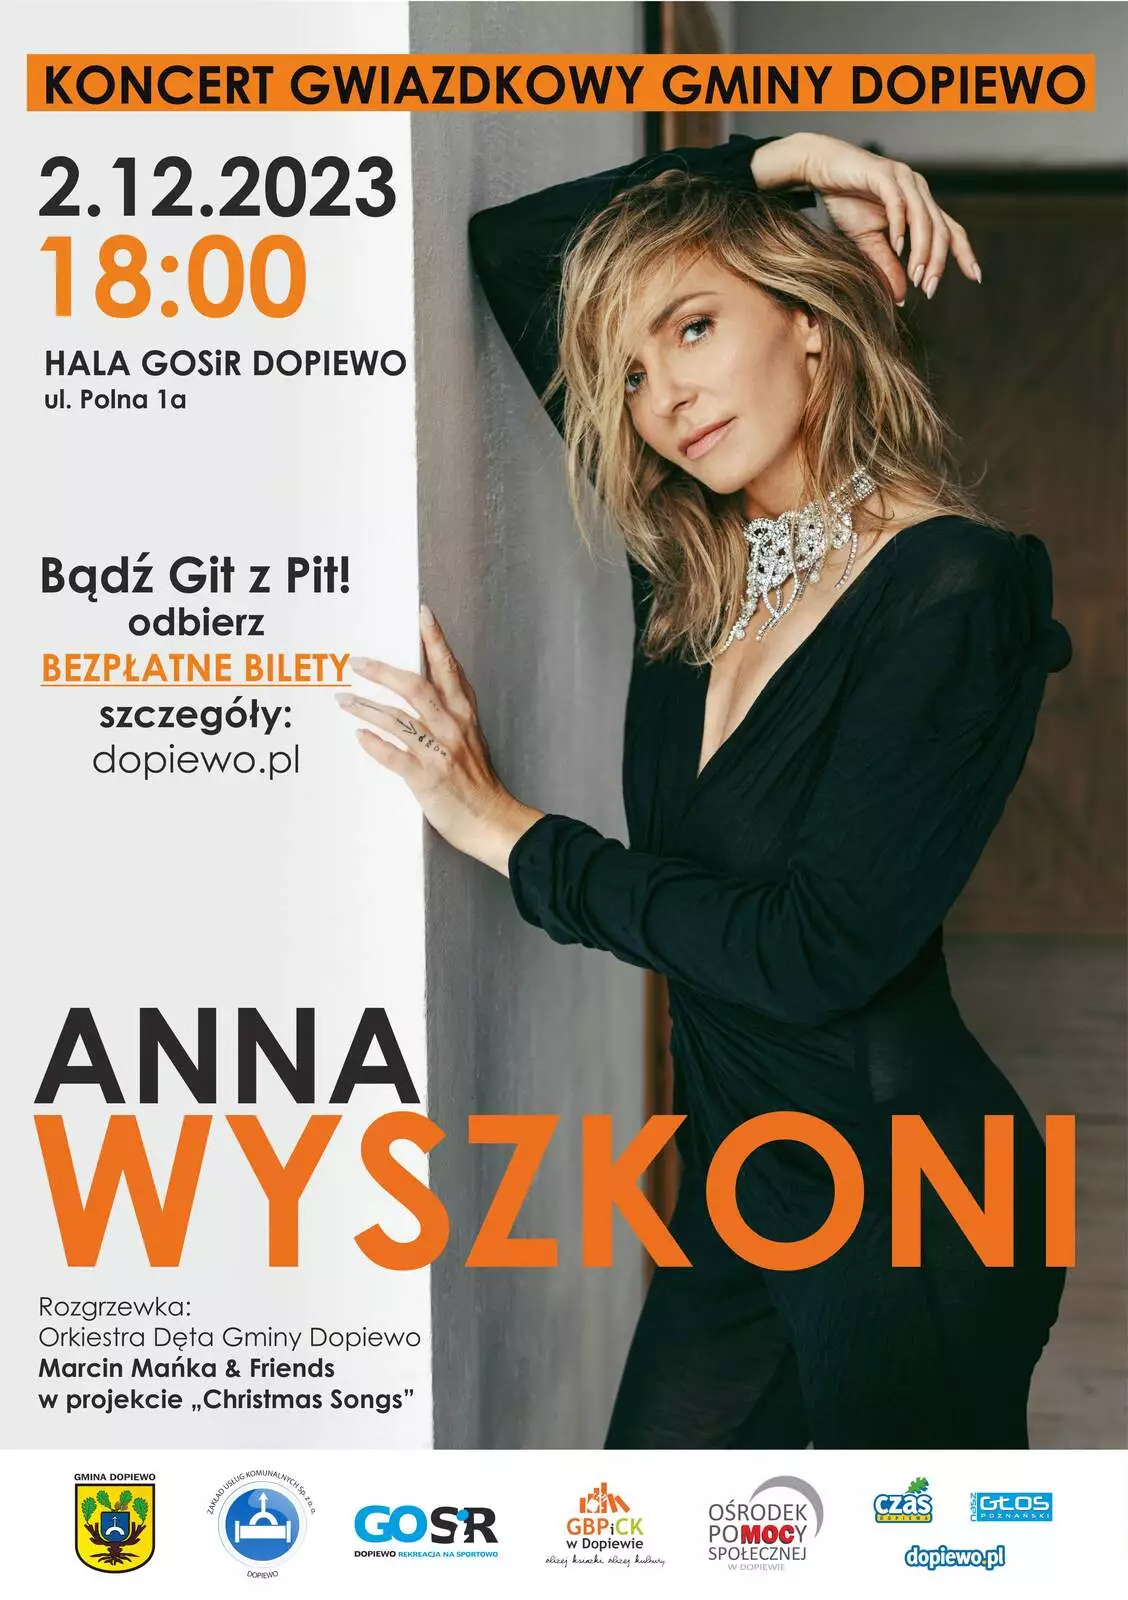 Koncert Gwiazdkowy z Anią Wyszkoni